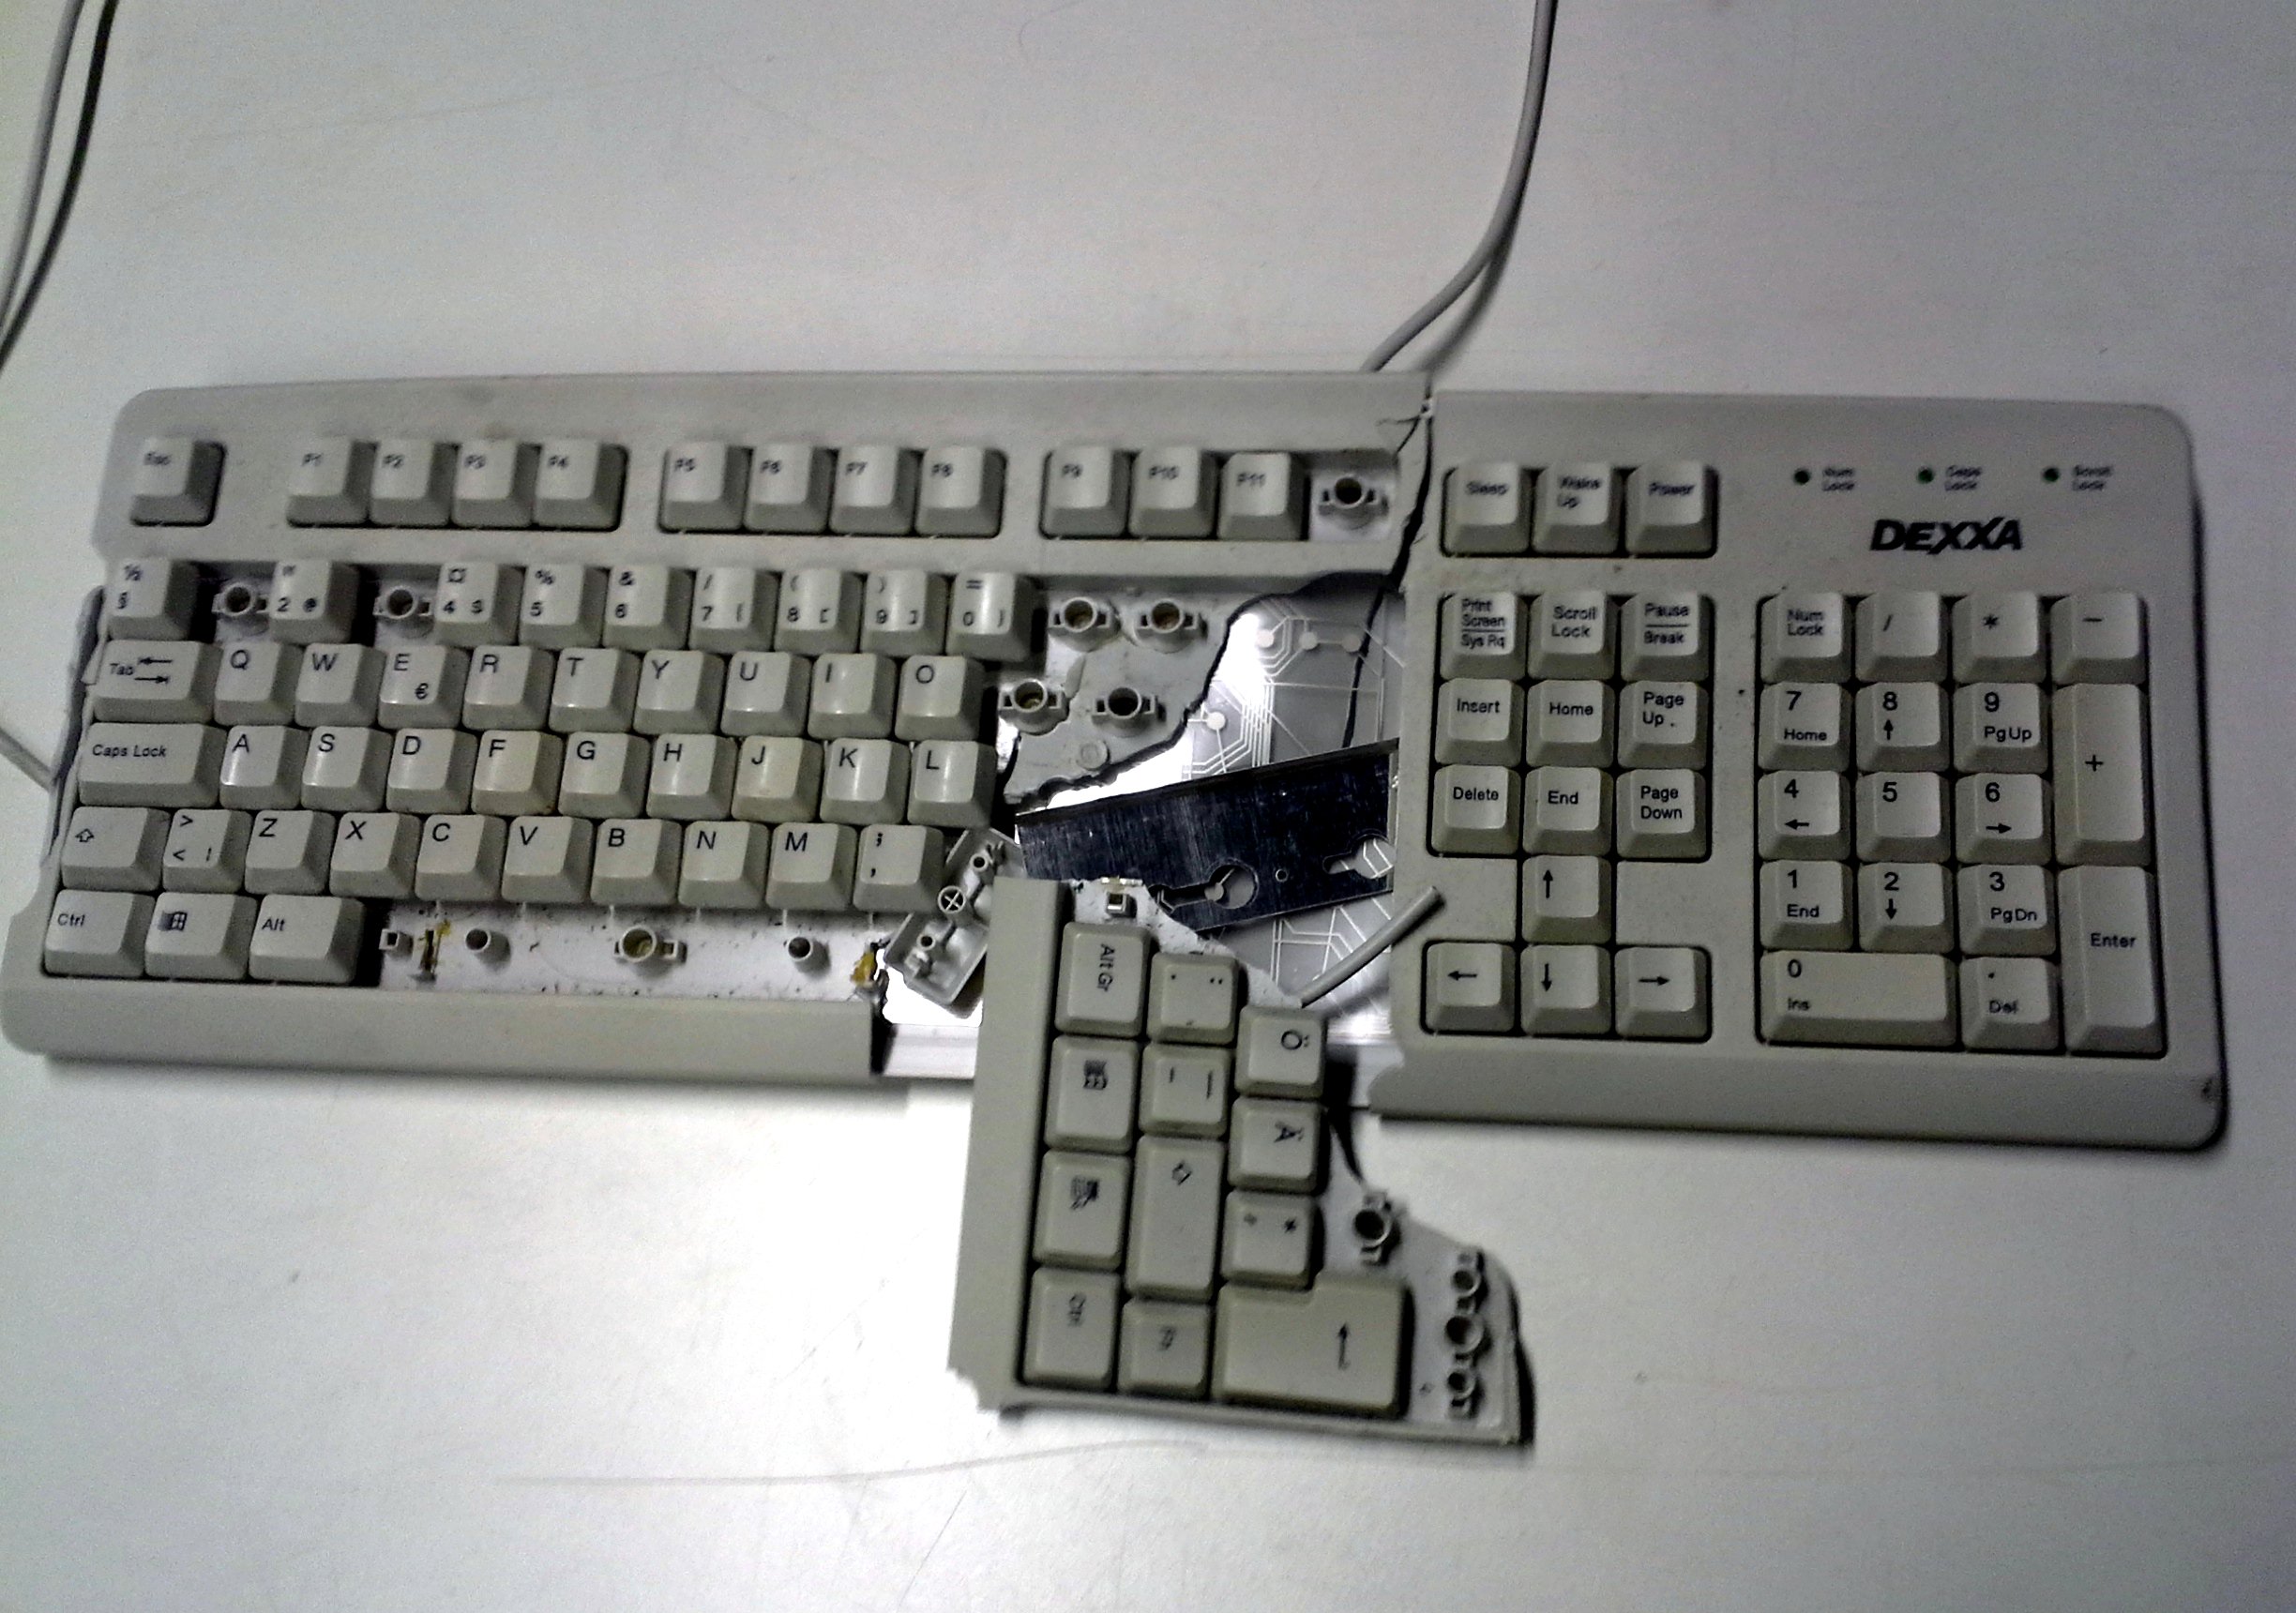 Broken keyboard